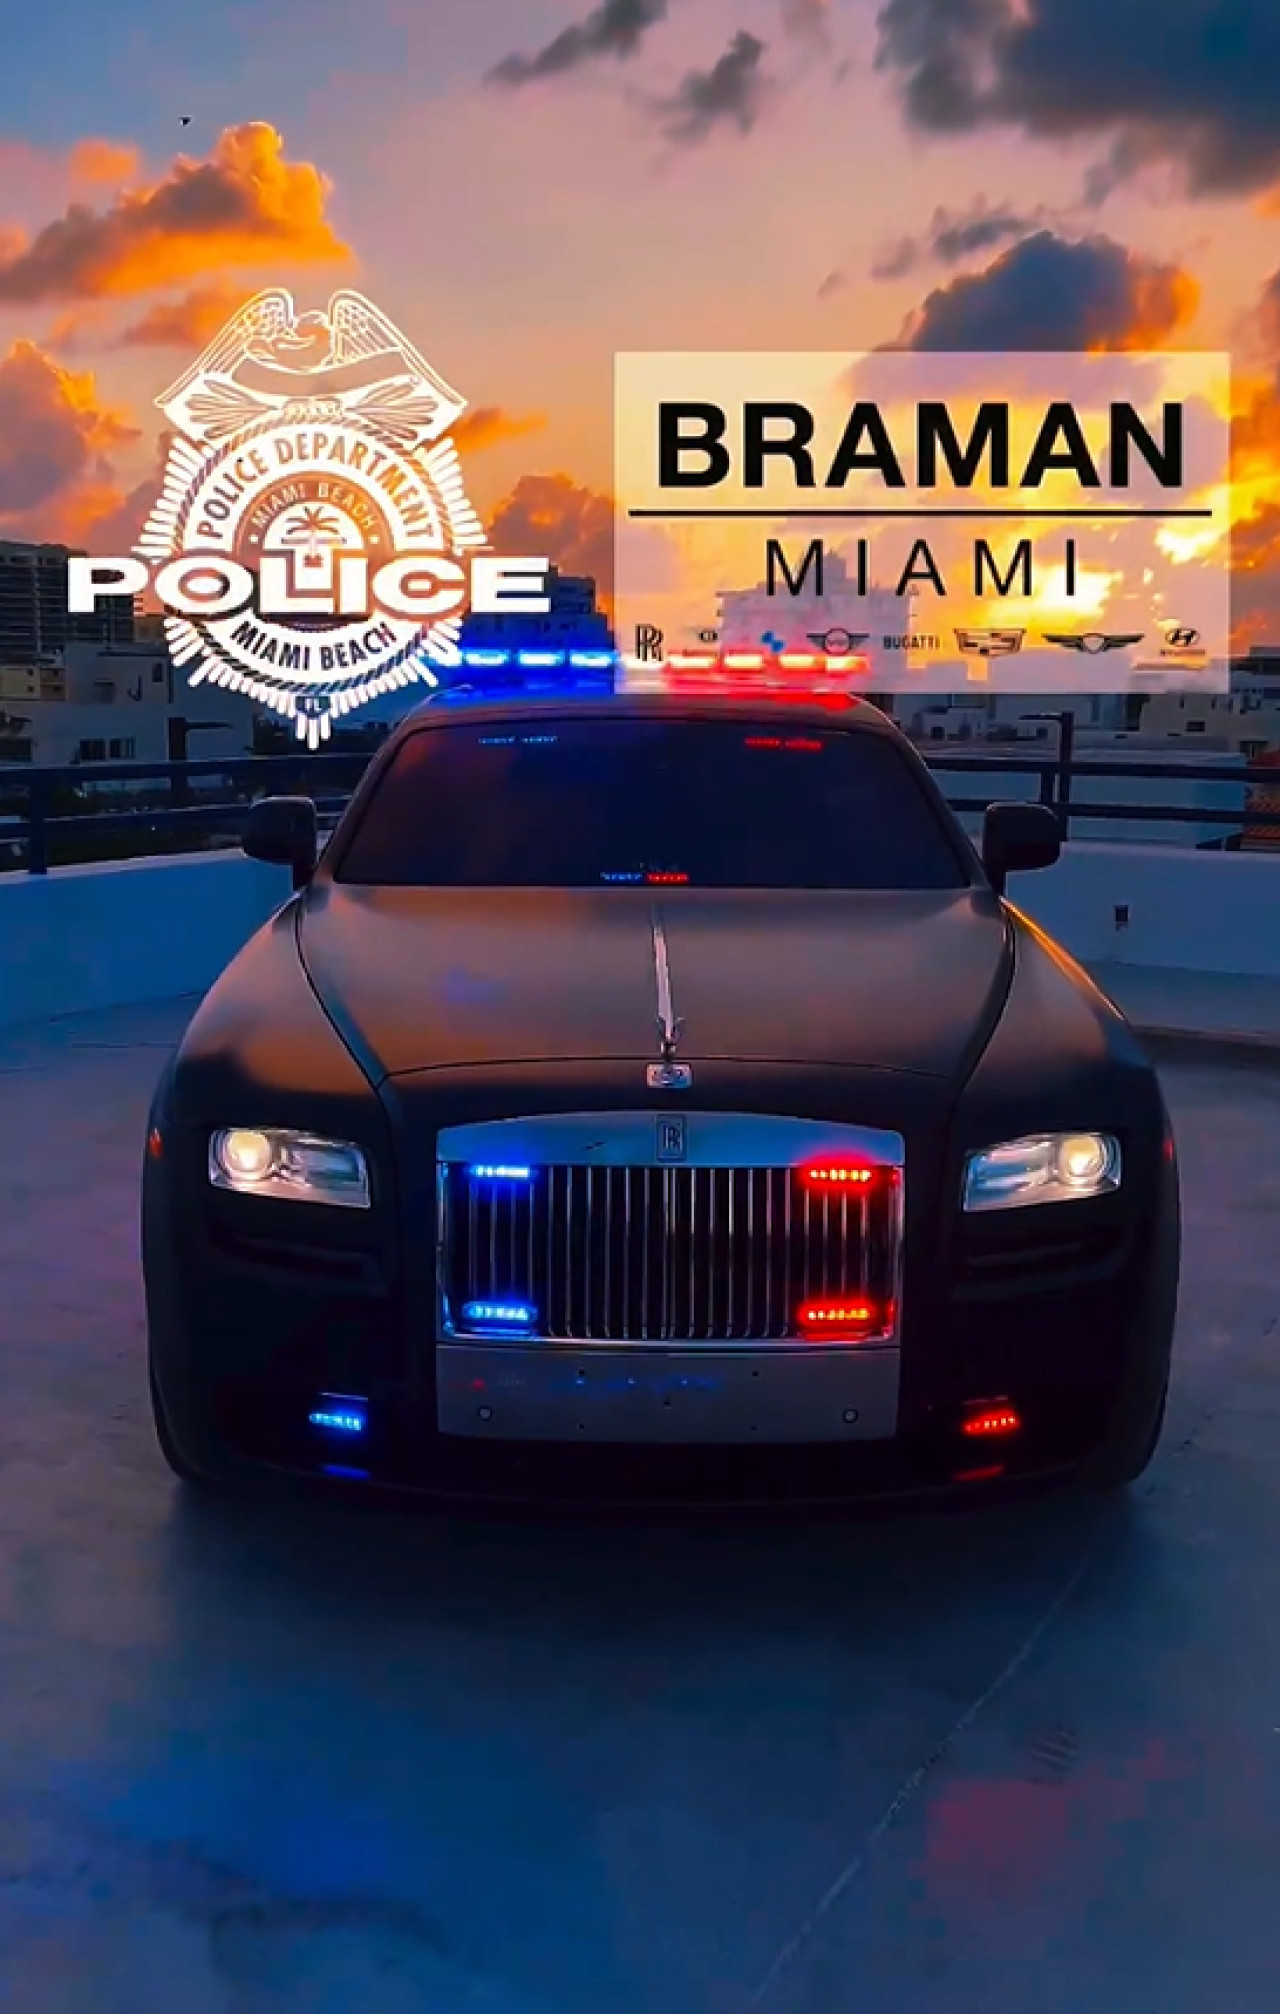 Nuevo vehículo de la policía de Miami. Foto: captura video Instagram/miamibeachpd